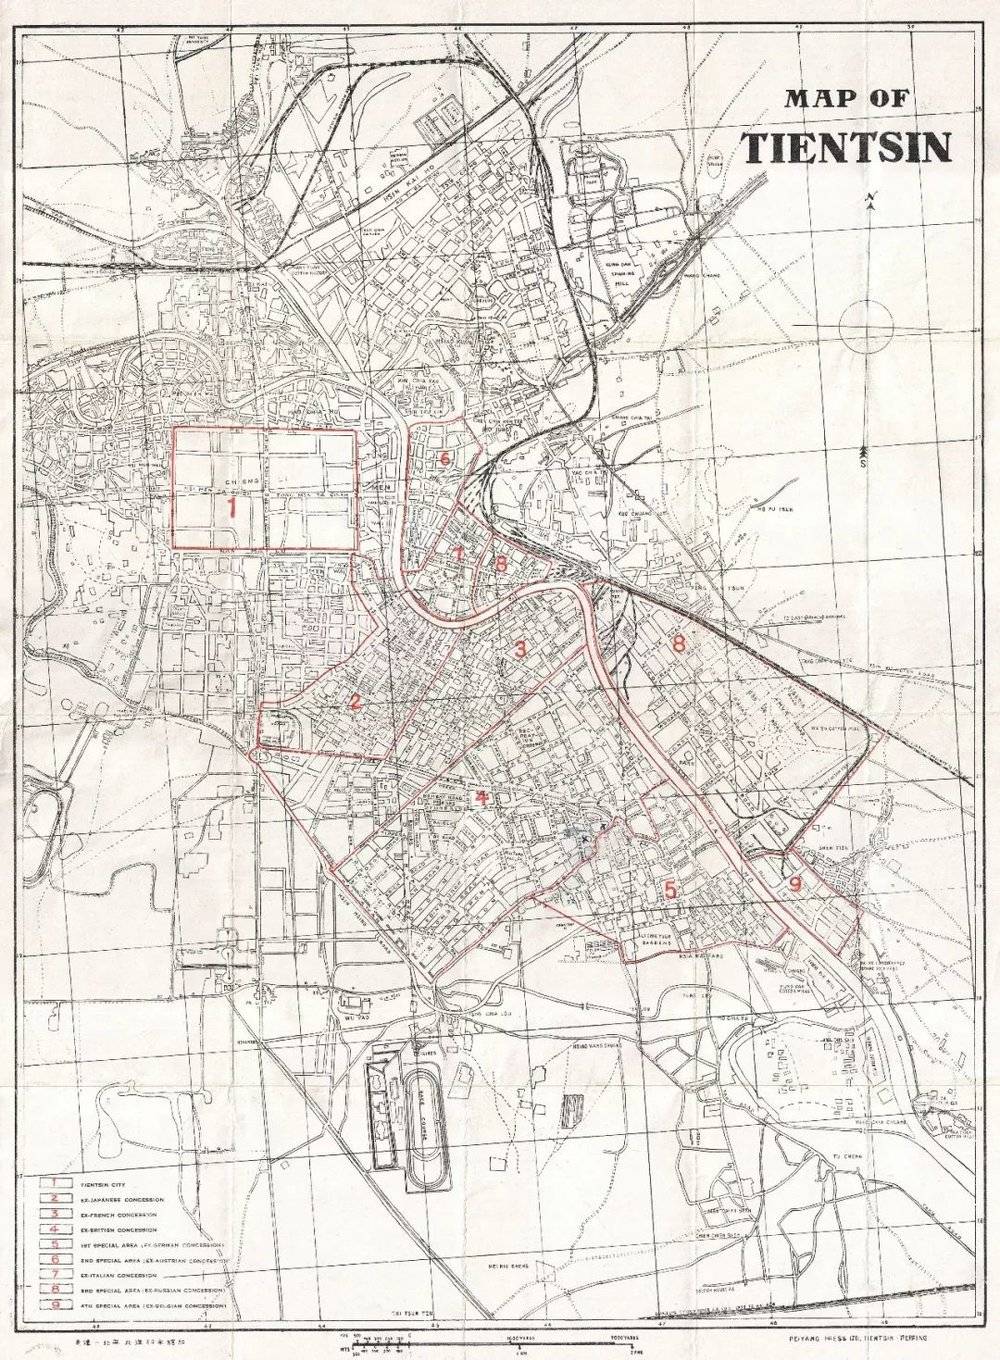 民国时的天津地图。图中标红区域除1为天津老城，均为列强租界。